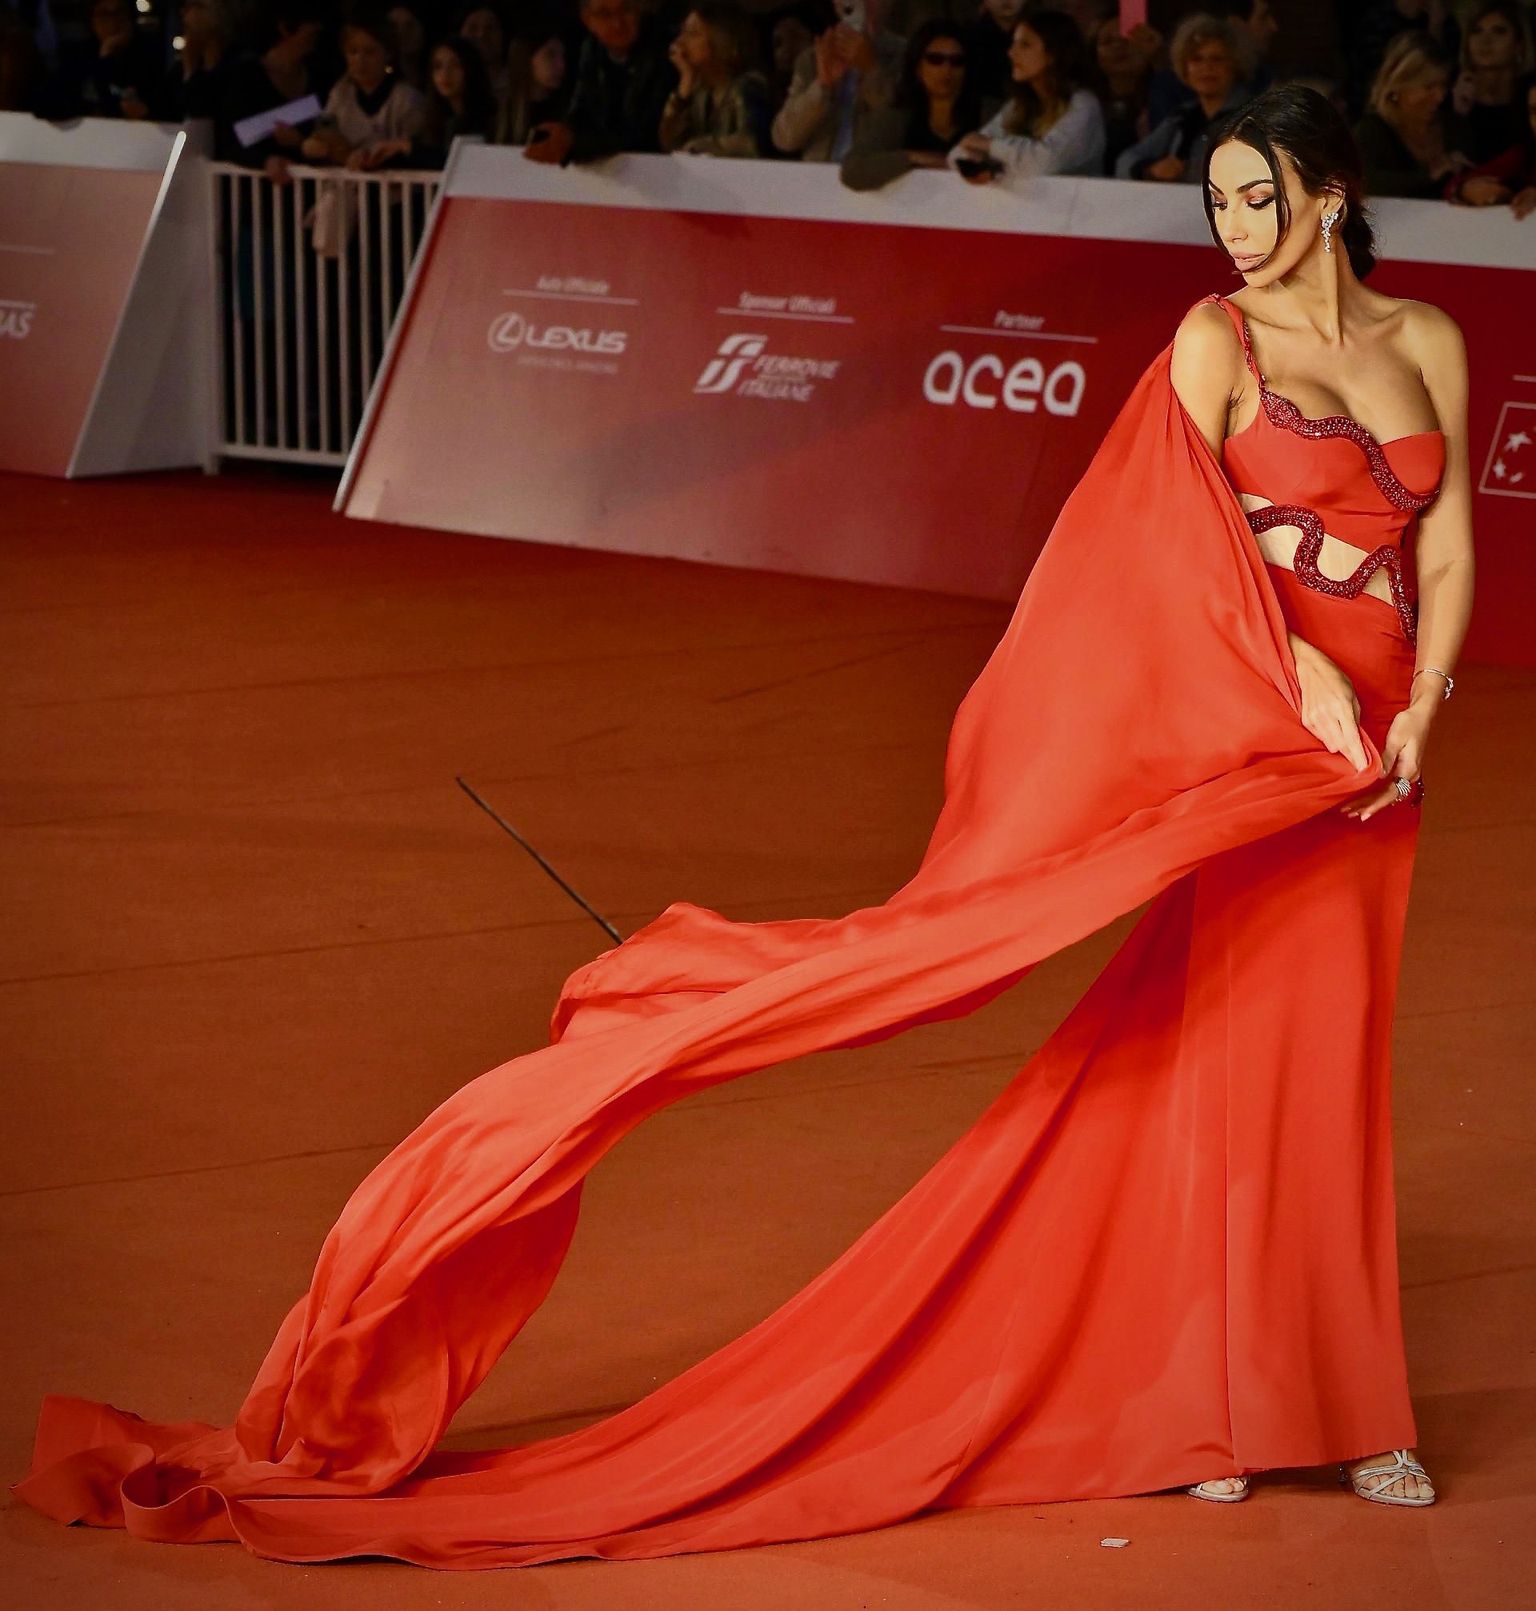 Miks talvel musta kanda ei tohi? Mida see teeb? See lugu annab vastused. Näitlejanna Diana Ghenea peatas Rooma filmifestivalil kõik pilgud Roberto Cavalli leegitsevas kleidis.